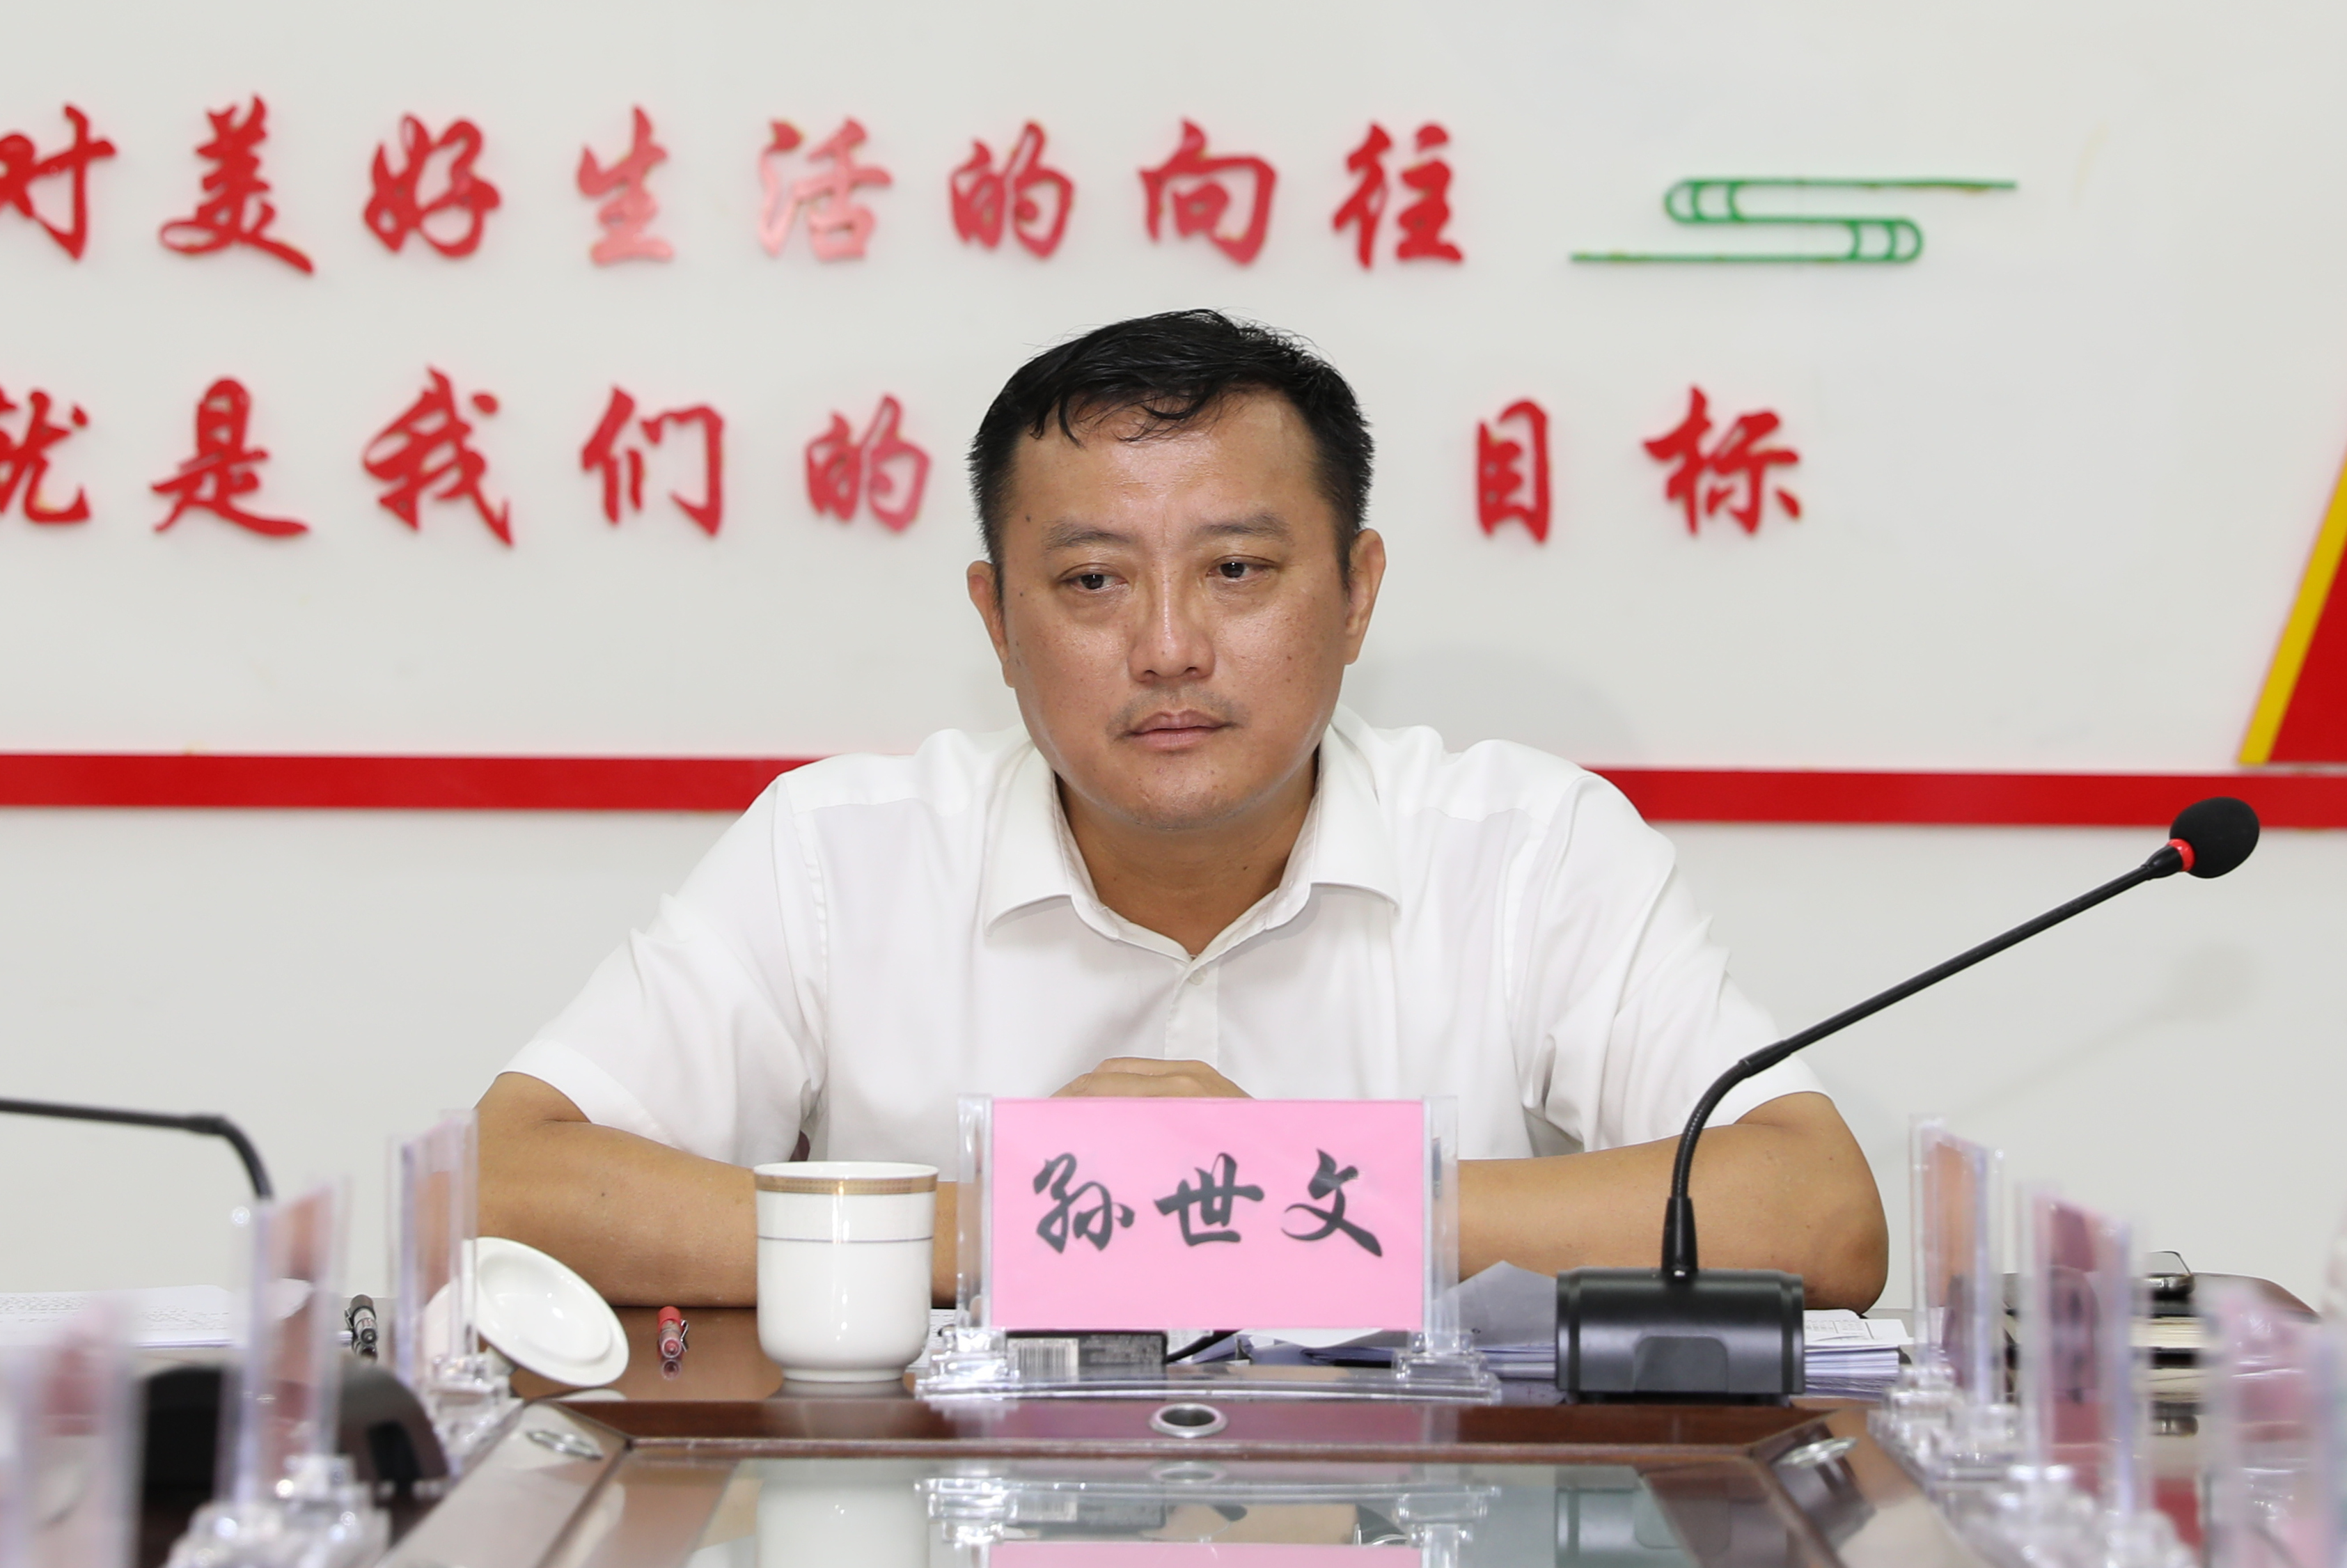 乐东县委书记孙世文在九所镇调研时强调坚持党建引领推动高质量发展